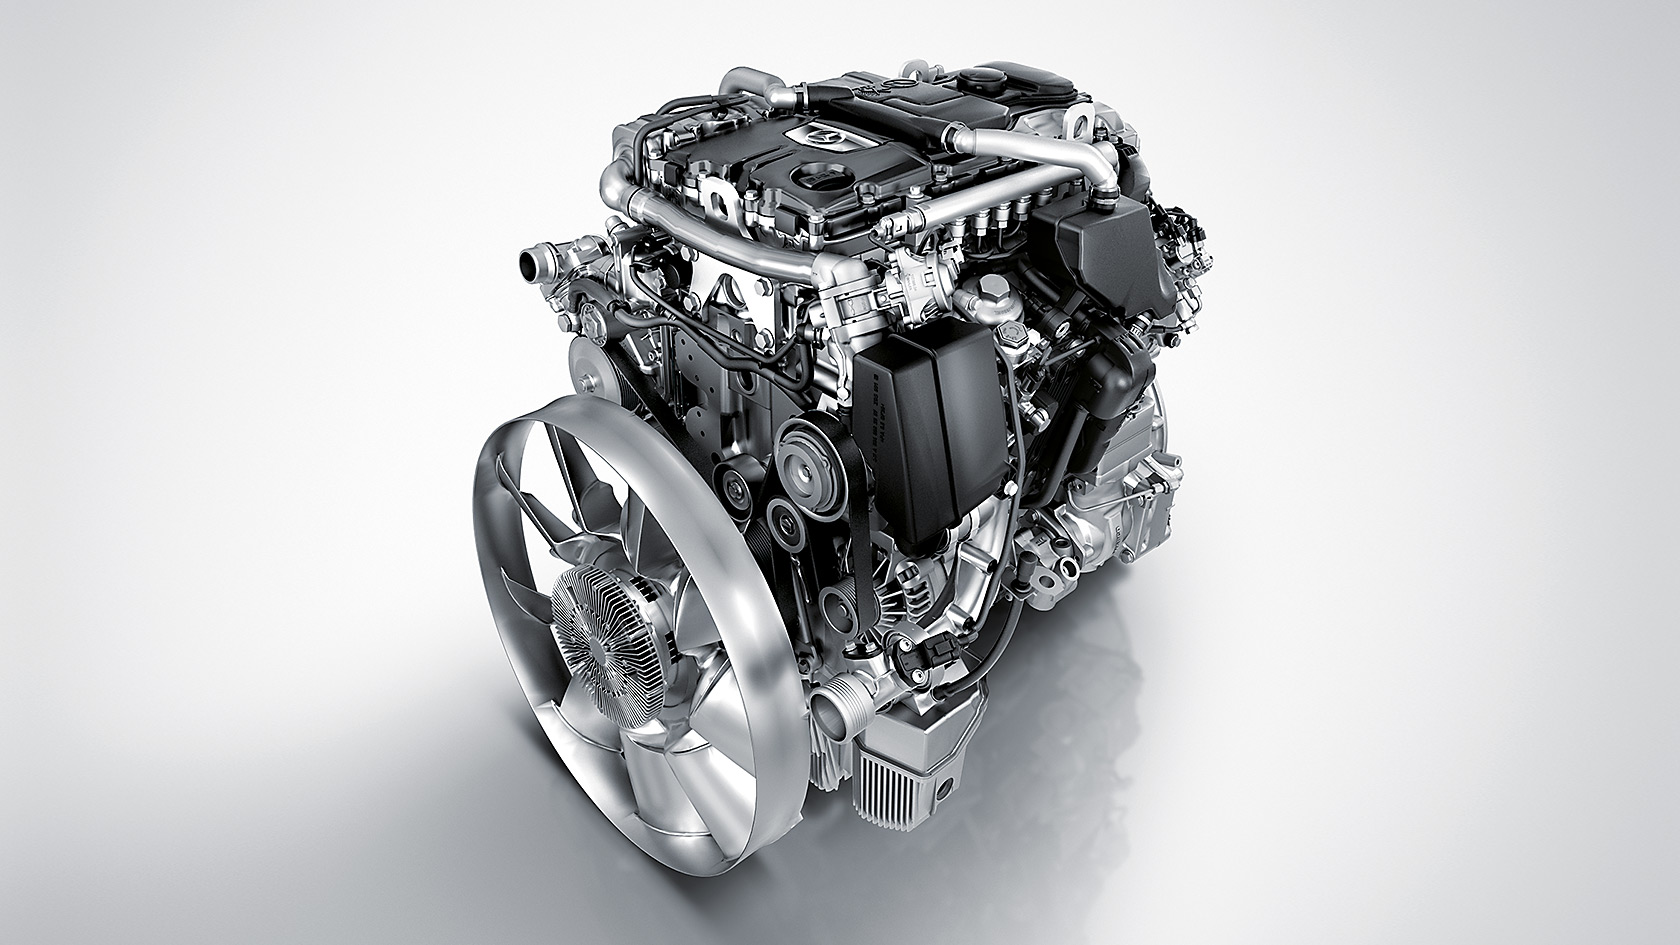 Atego: Motoren, Getriebe, Schaltung – Mercedes-Benz Lkw ...